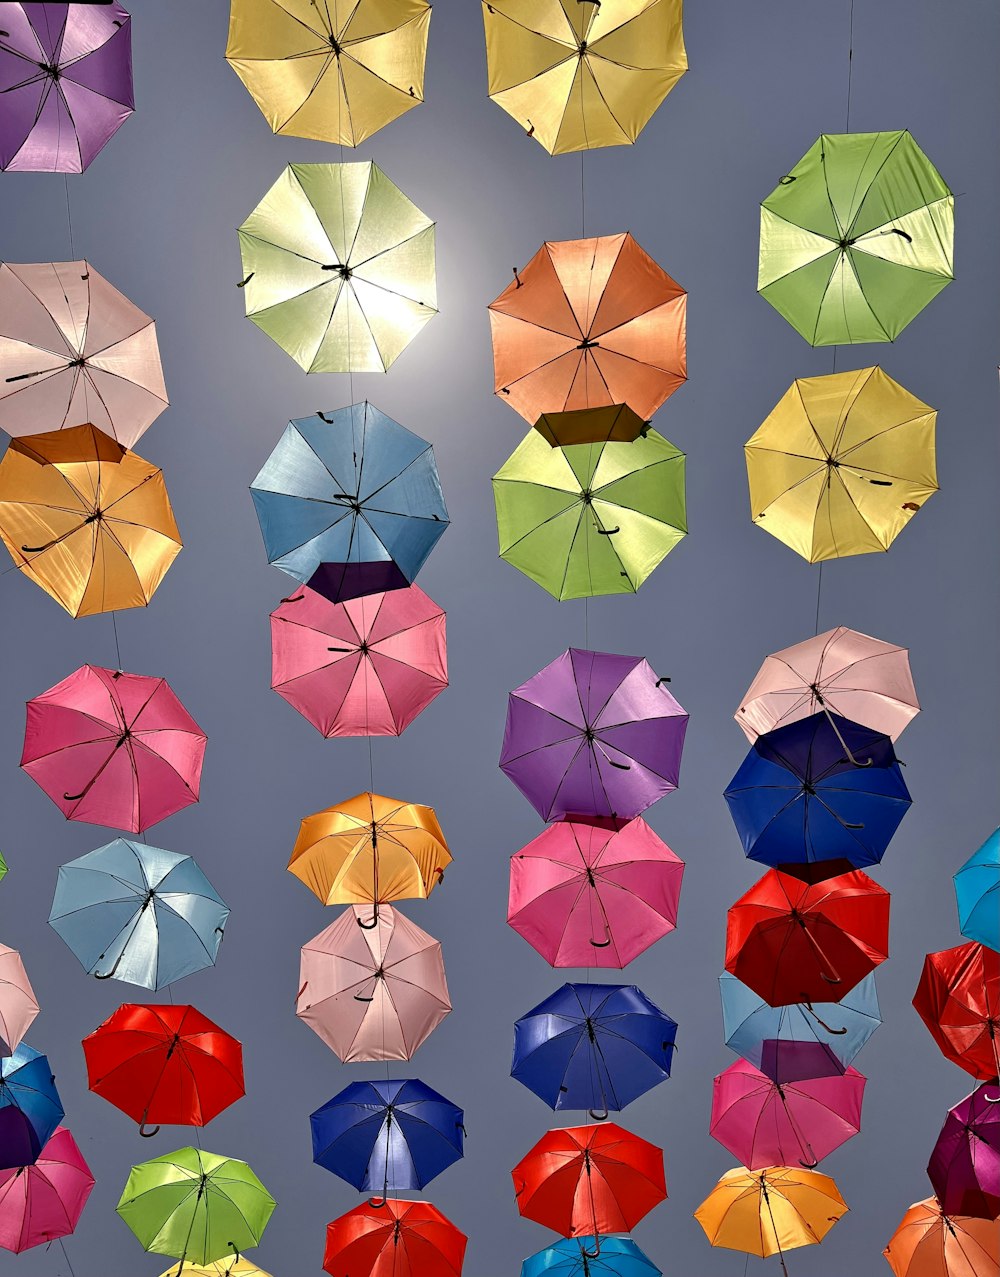 Ein Haufen bunter Regenschirme hängt in der Luft